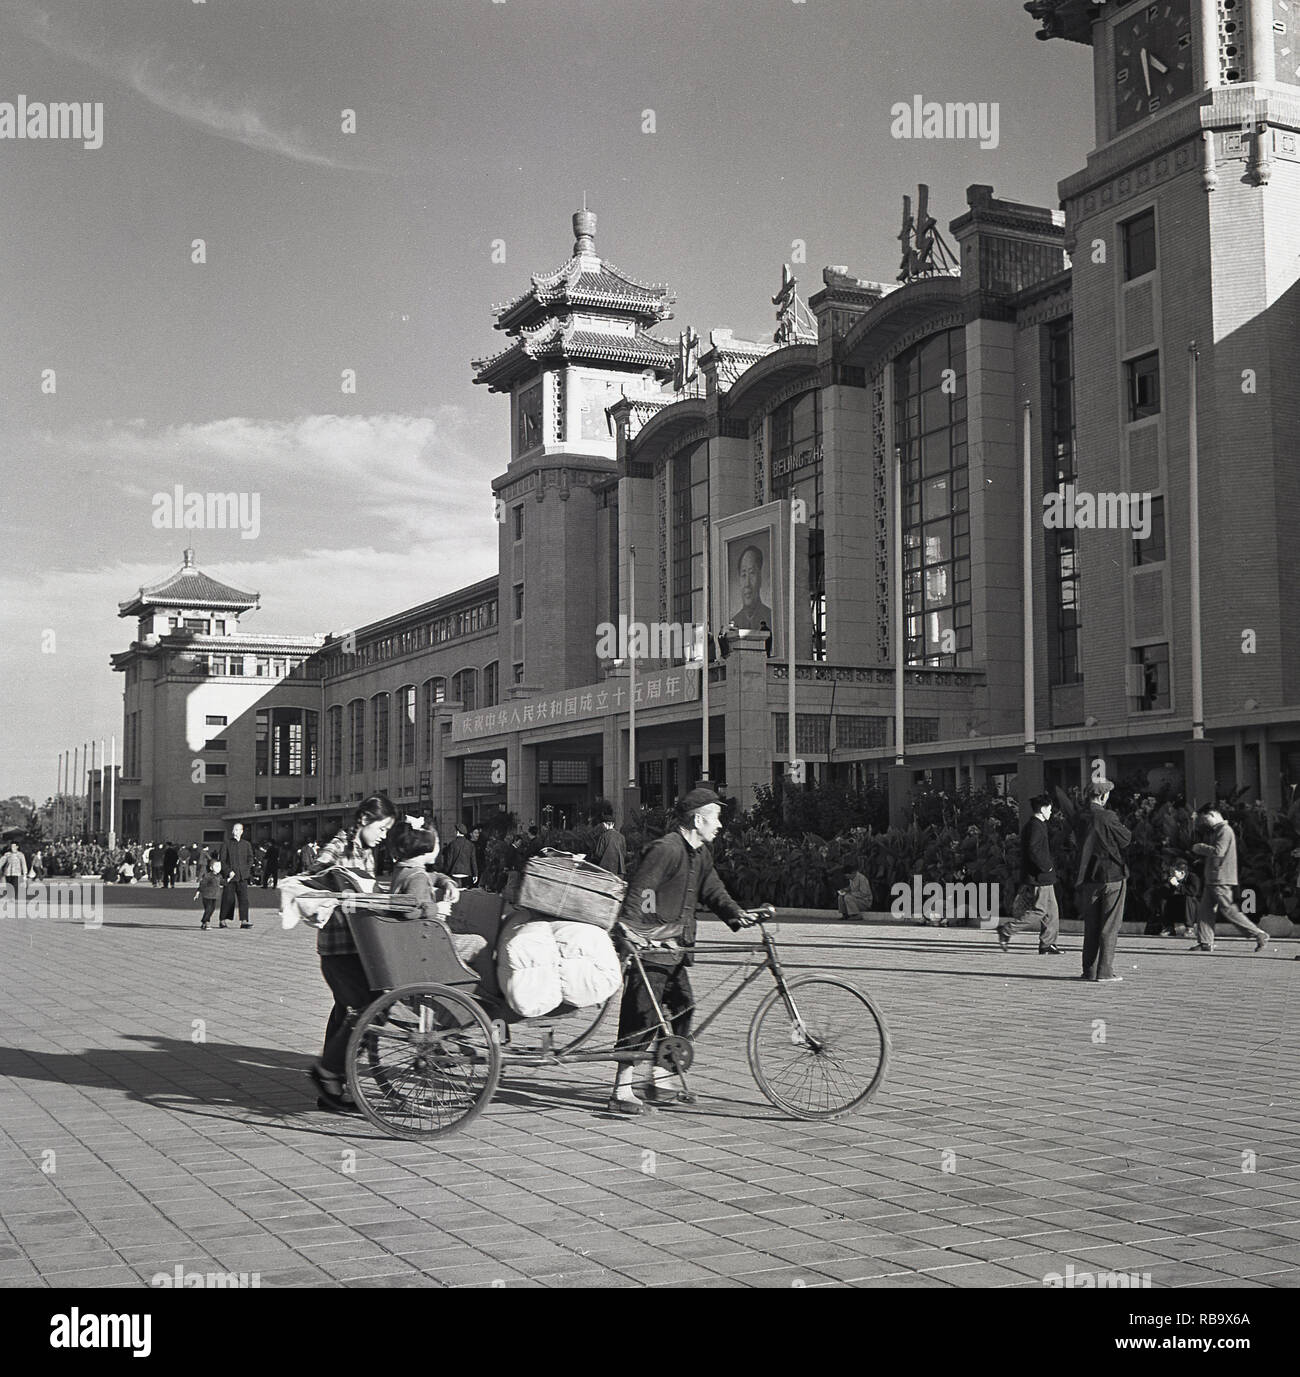 Résultat de recherche d'images pour "china mao bicycle black white"